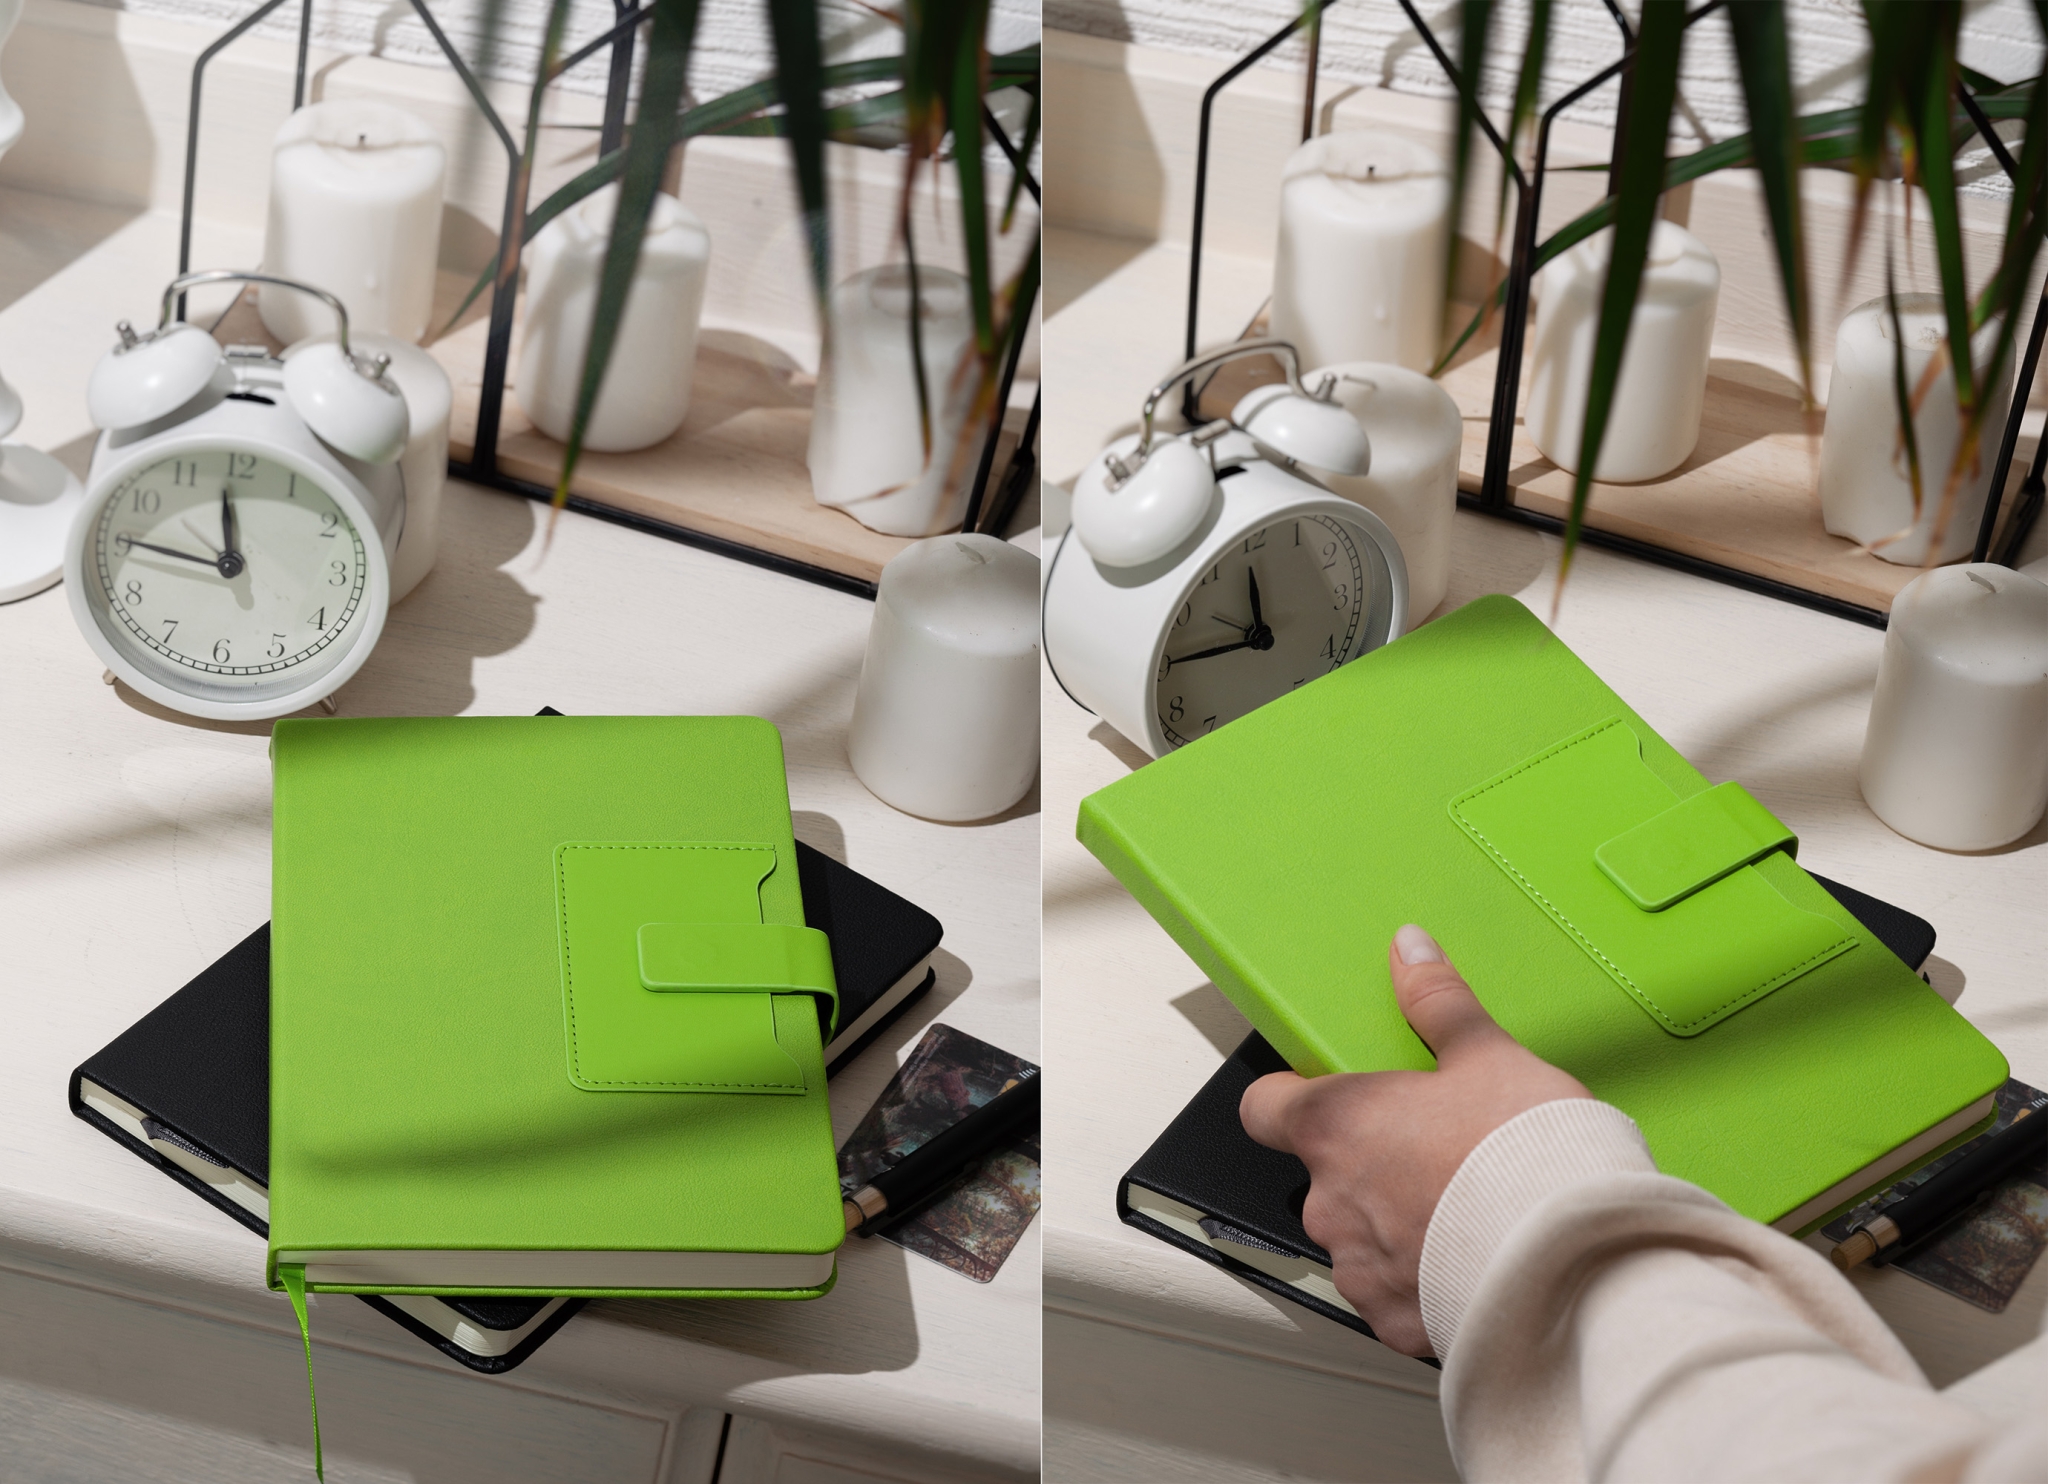 Ежедневник недатированный "Монти", формат А5, зеленый, кожзам